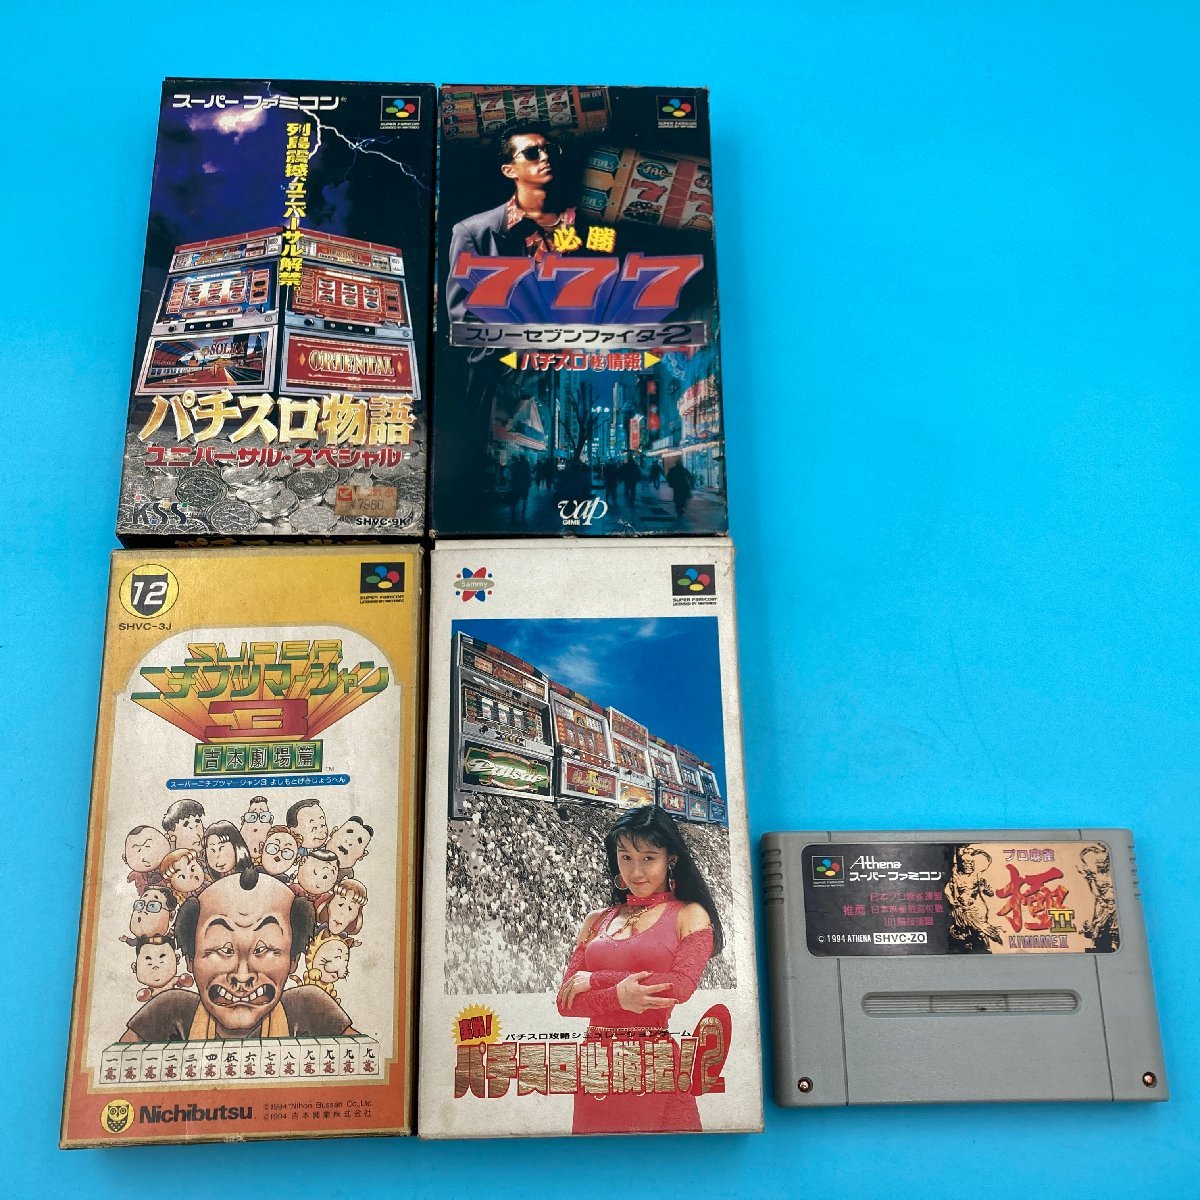 [A9507P005] Super Famicom игра soft 5 пункт совместно s Lee seven Fighter игровой автомат история игровой автомат обязательно . закон маджонг 